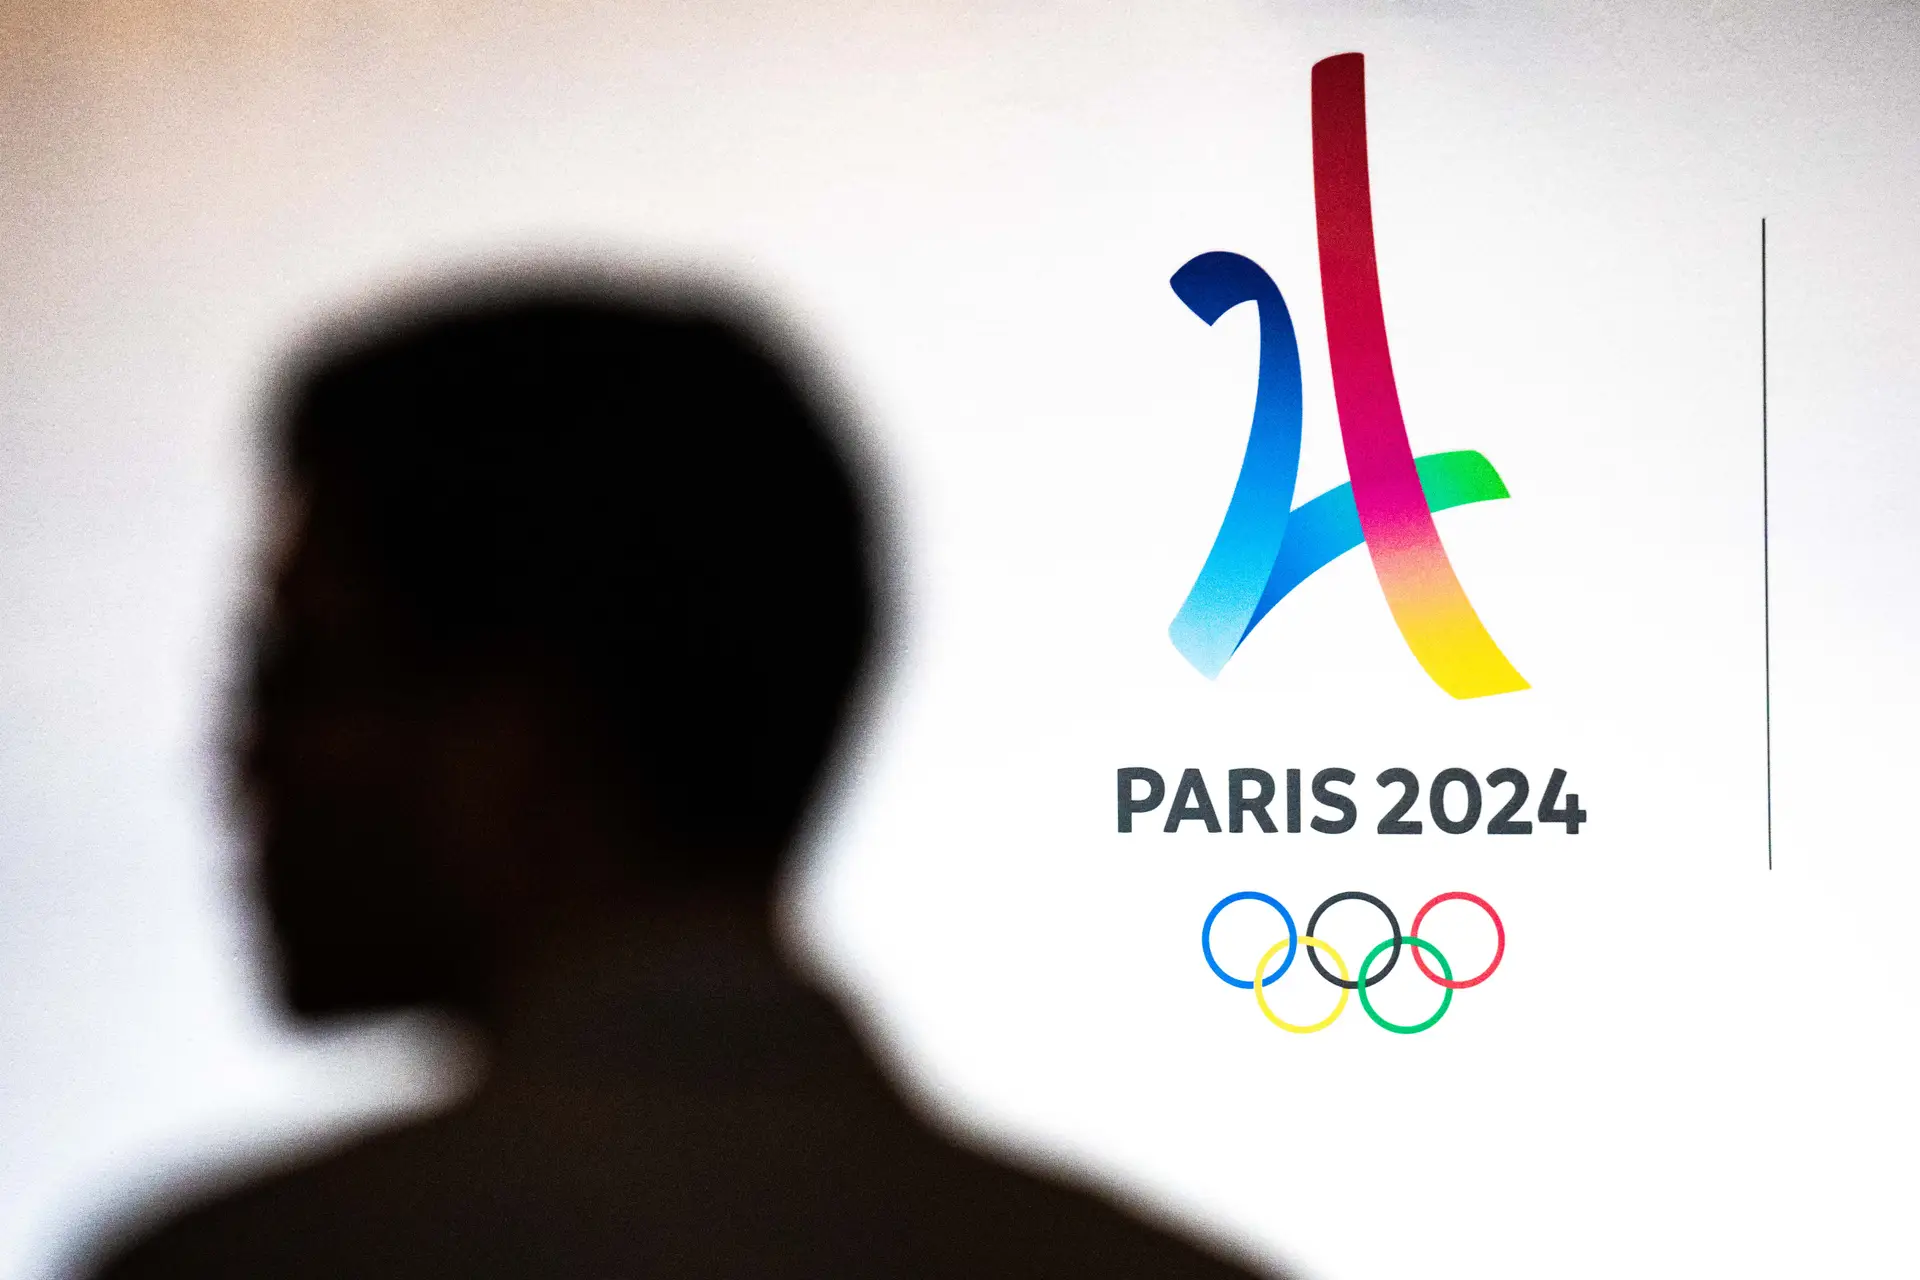 Medalhados de ouro nas provas de atletismo dos Jogos Olímpicos Paris2024 vão receber prémio monetário